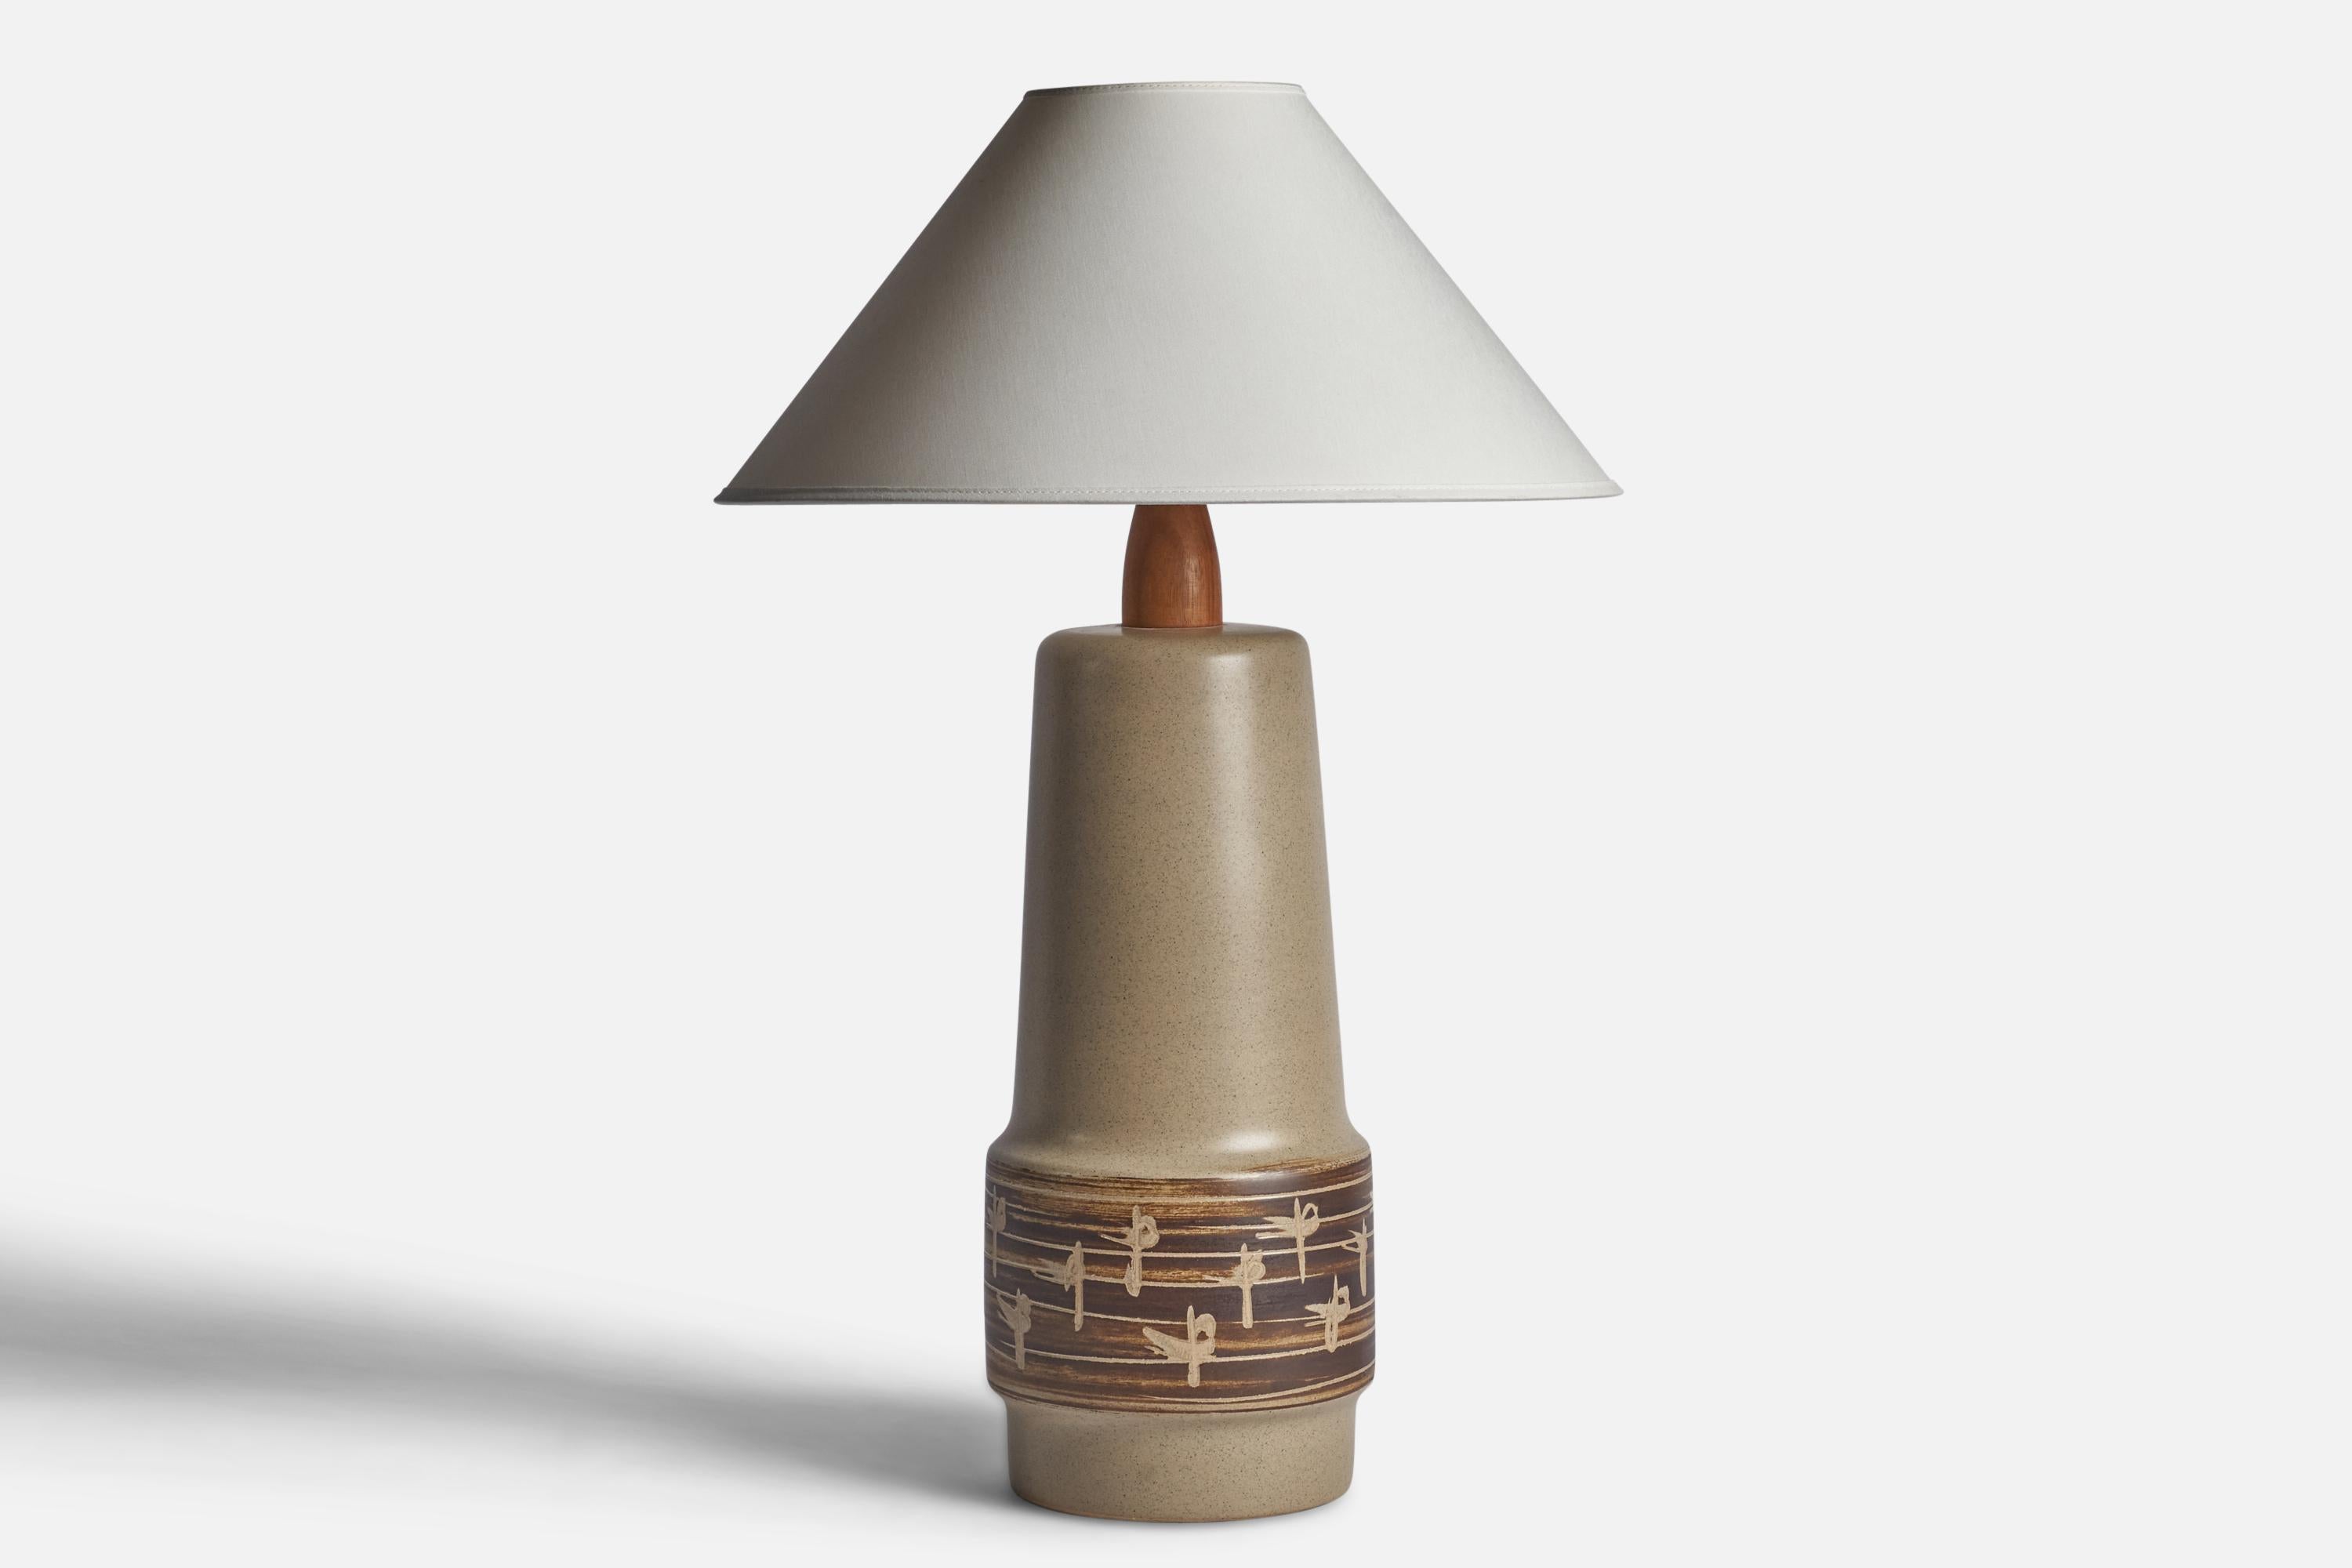 Lampe de table en céramique émaillée grise et brune et en noyer, conçue par Jane & Gordon Martz et produite par Marshall Studios, États-Unis, années 1960.

Dimensions de la lampe (pouces) : 20.75